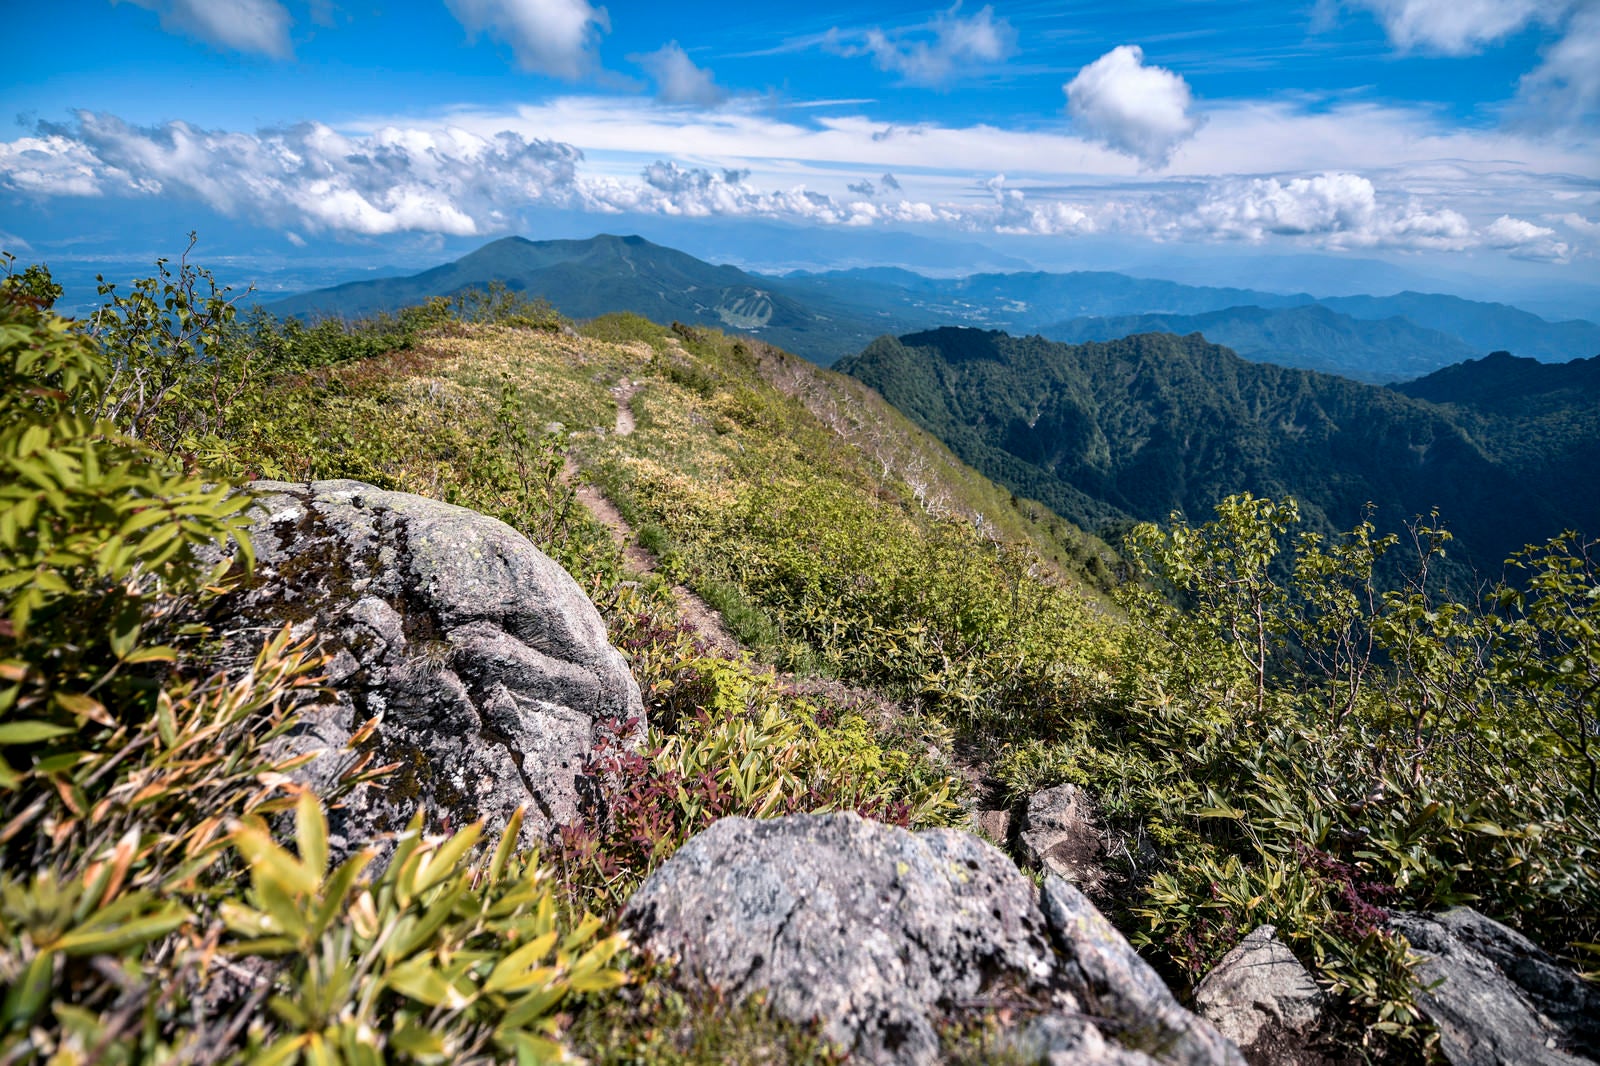 「高妻山山頂から飯縄山方面を見た景色」の写真